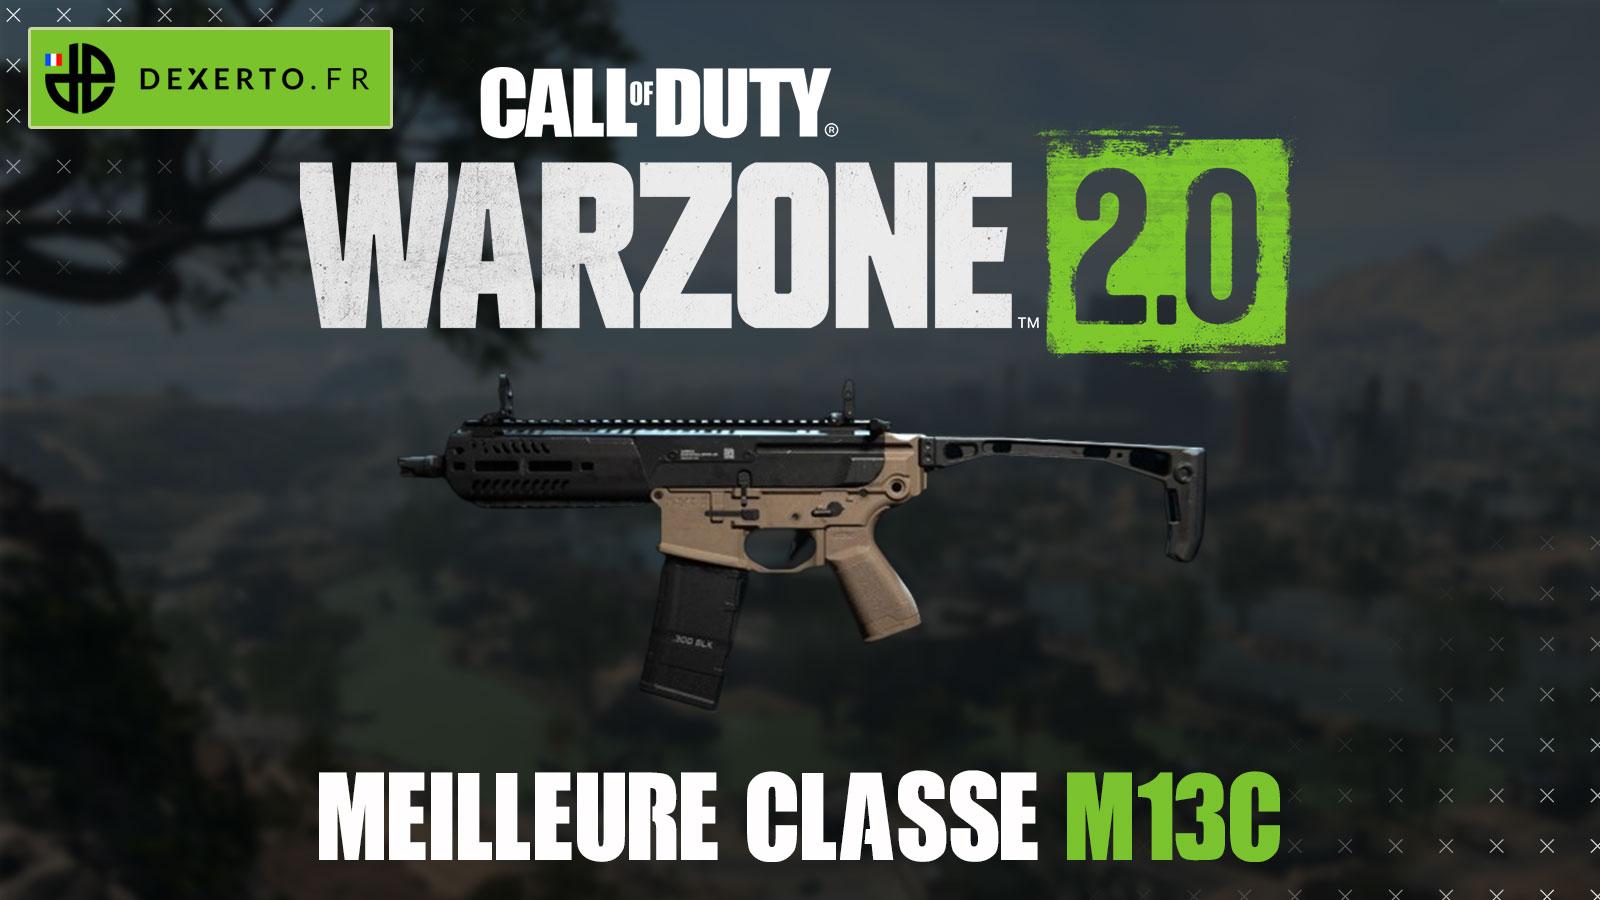 M13C Meilleure classe Warzone